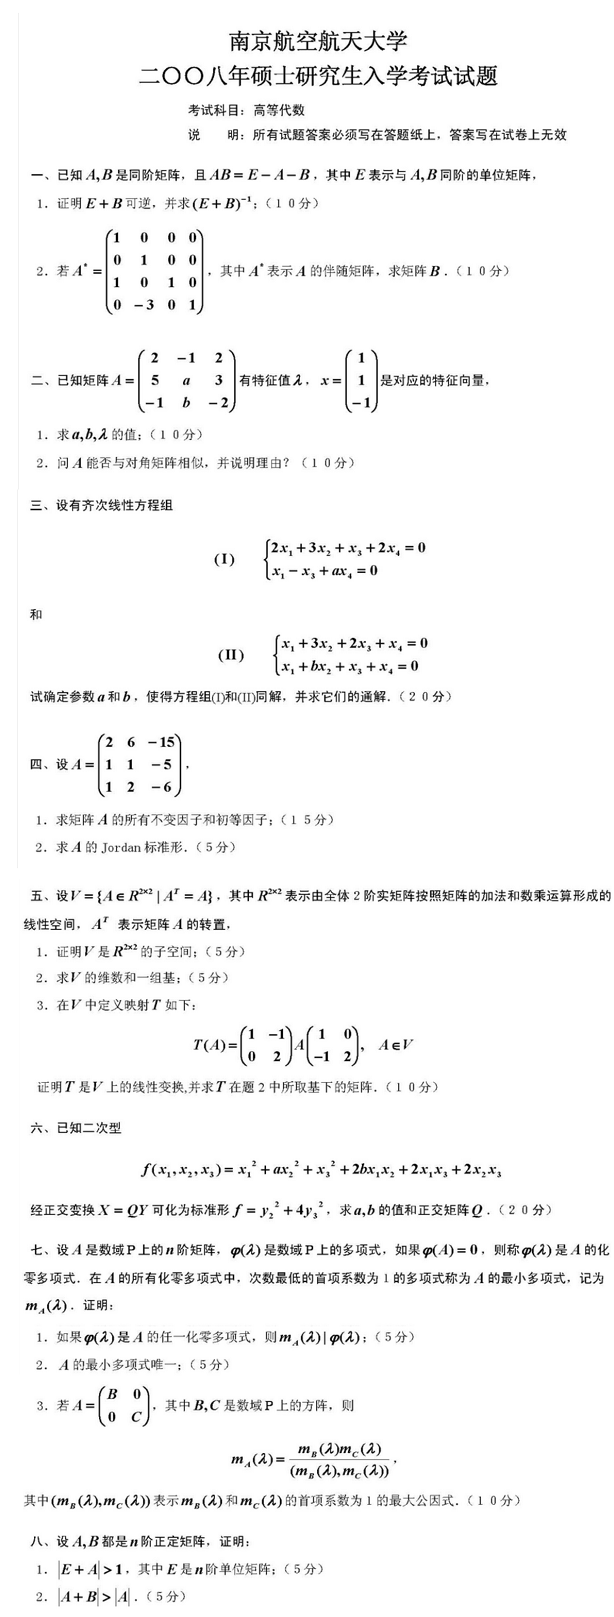 2008南京航空航天大学考研数学真题（高等代数）.png